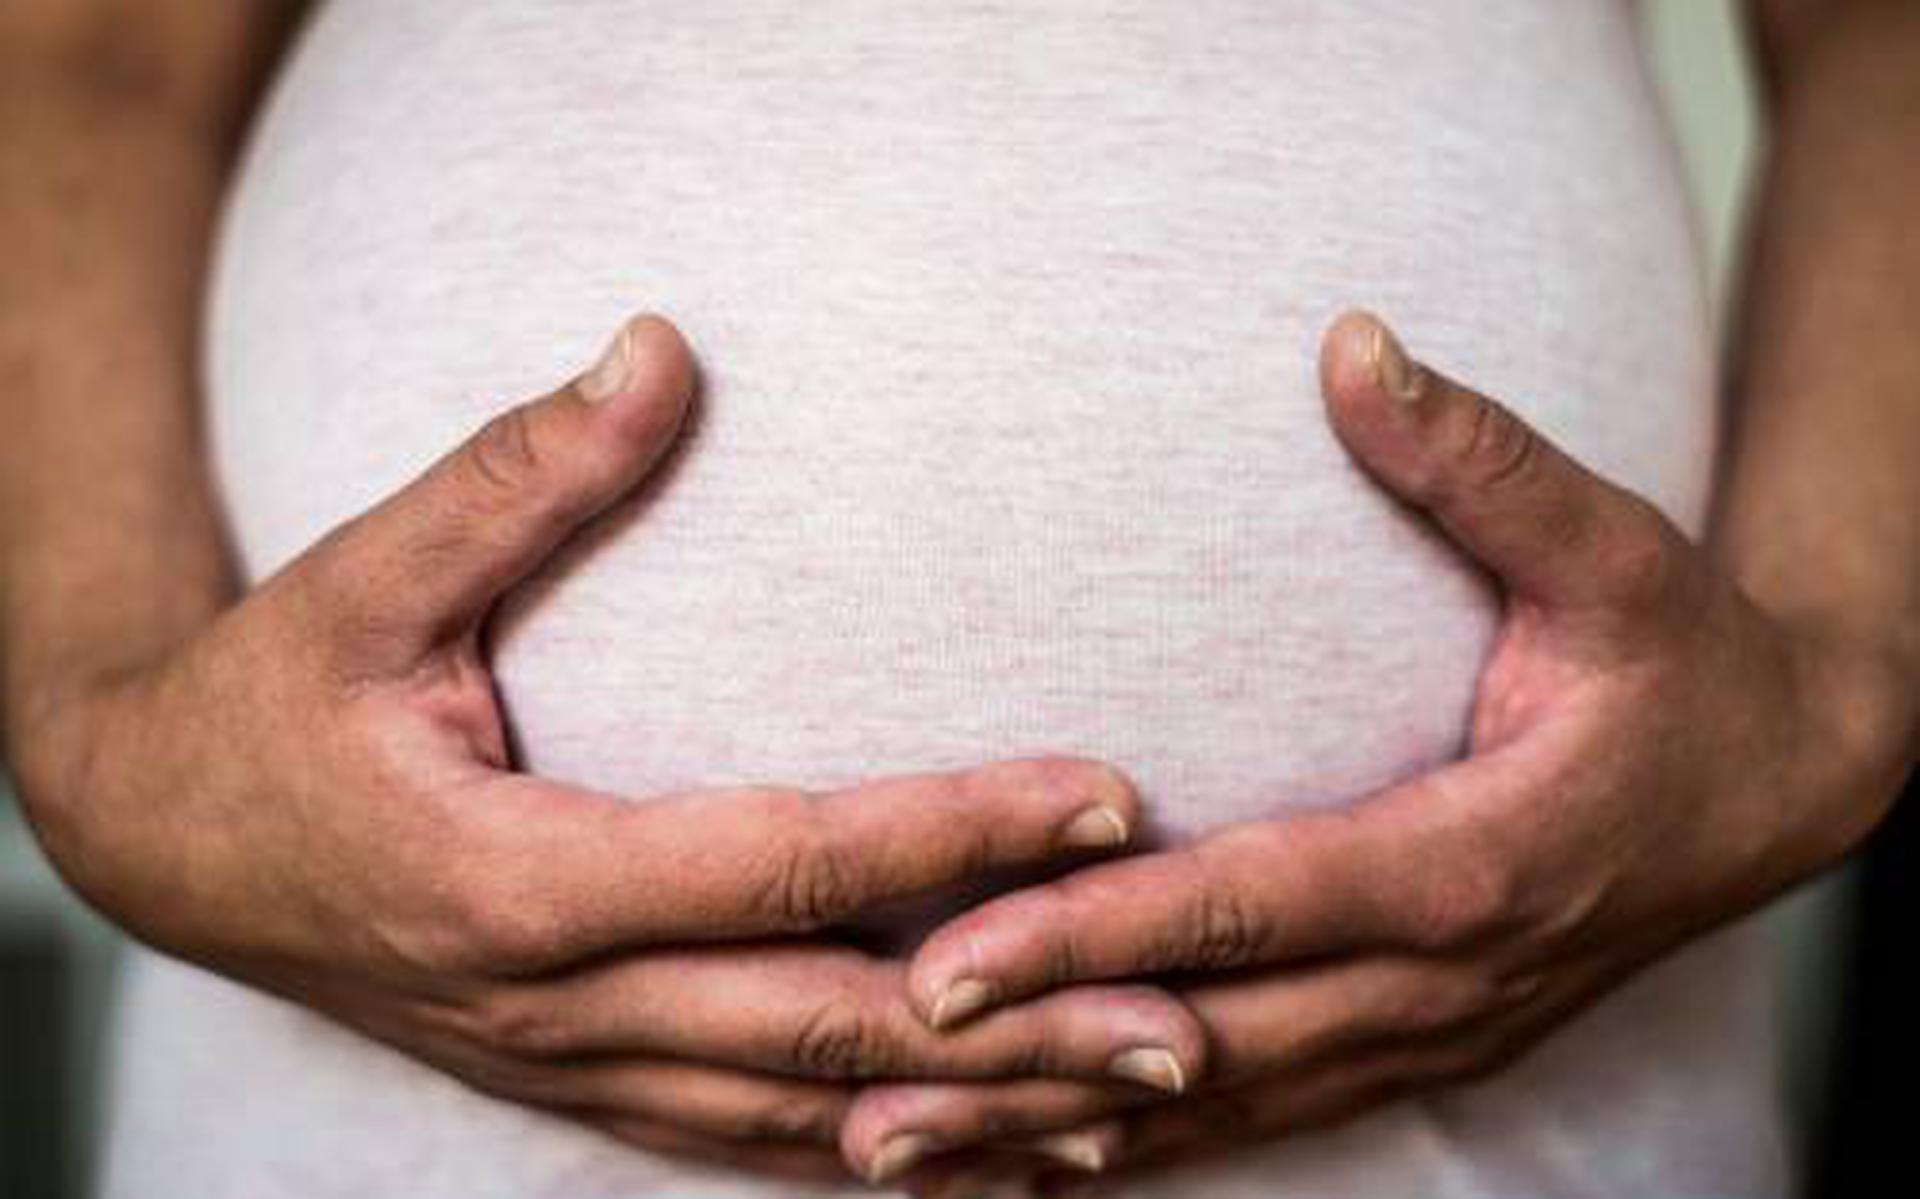 Vrouwen slikken weinig foliumzuur rondom zwangerschap - Dagblad het Noorden